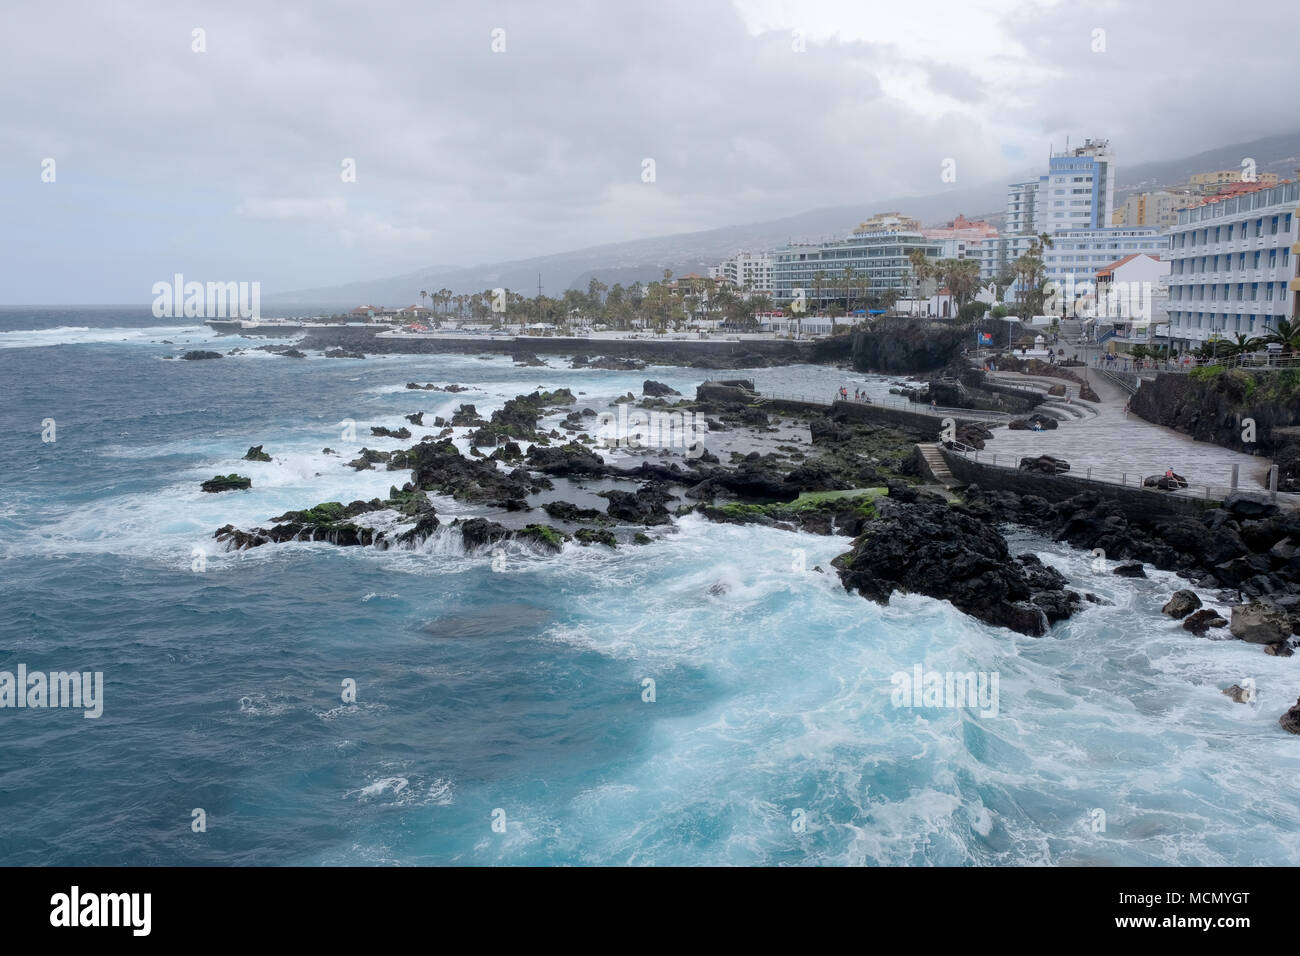 Puerto de la Cruz, Tenerife, Canaries ; mer agitée sur le front de mer bien entretenu comme le vent se lève à partir de l'arrivée d'une tempête. Banque D'Images